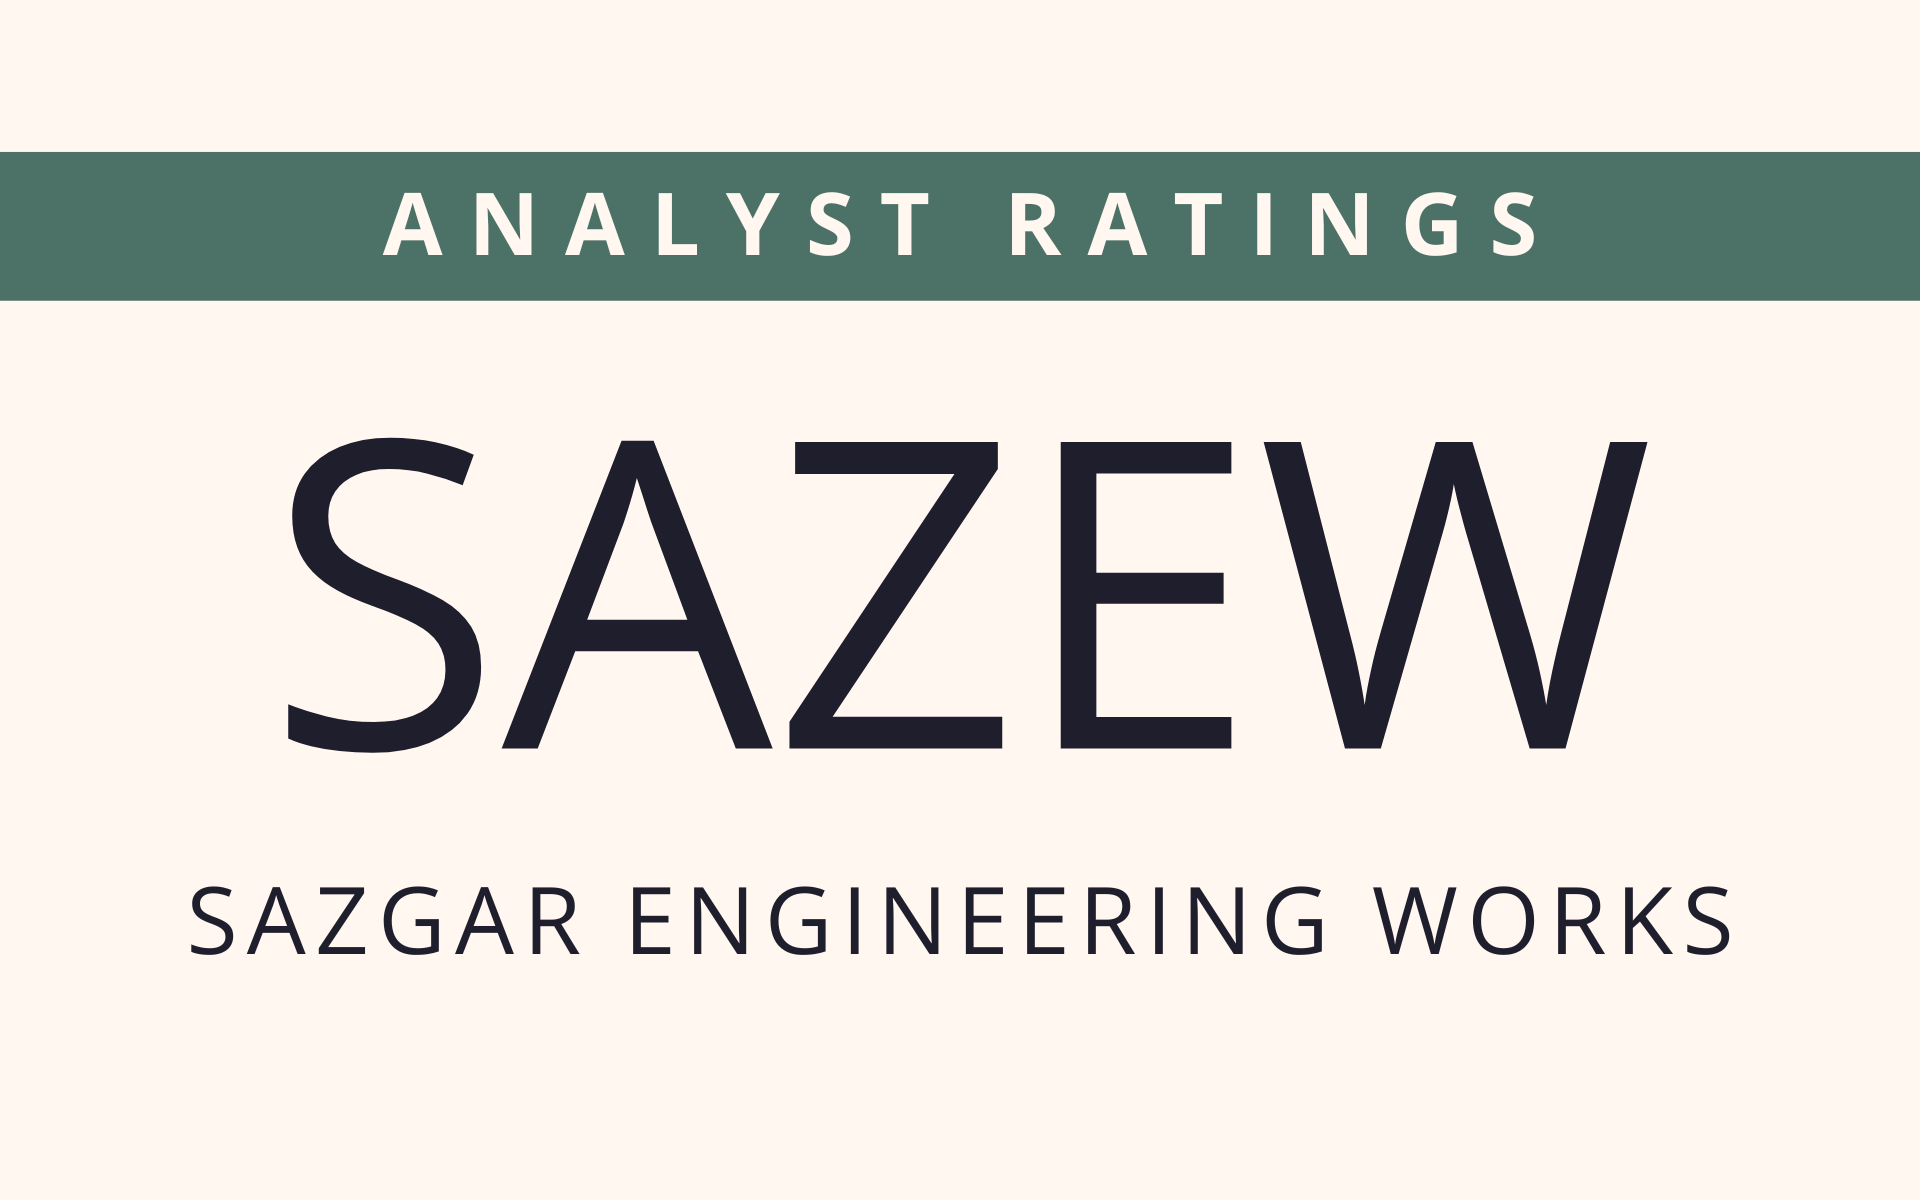 SAZEW- ANALYST RATINGS